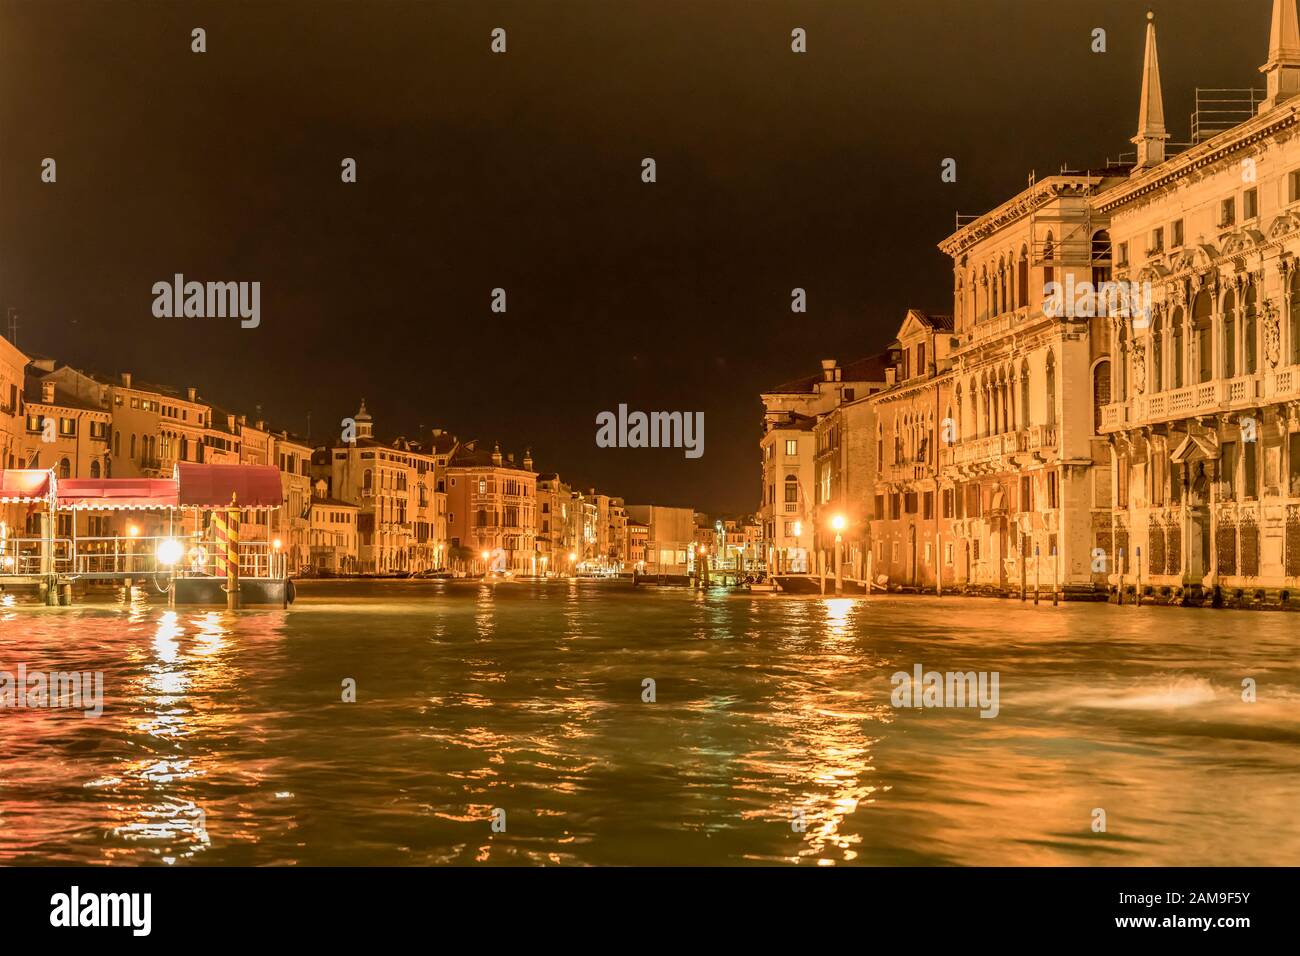 Venedig, ITALIEN - 30. Oktober 2019: Nächtliches Stadtbild mit Lichtern auf dem großen Kanal namens "Grande", am 30. oktober 2019 in Venedig, Venetien, Italien, gedreht Stockfoto